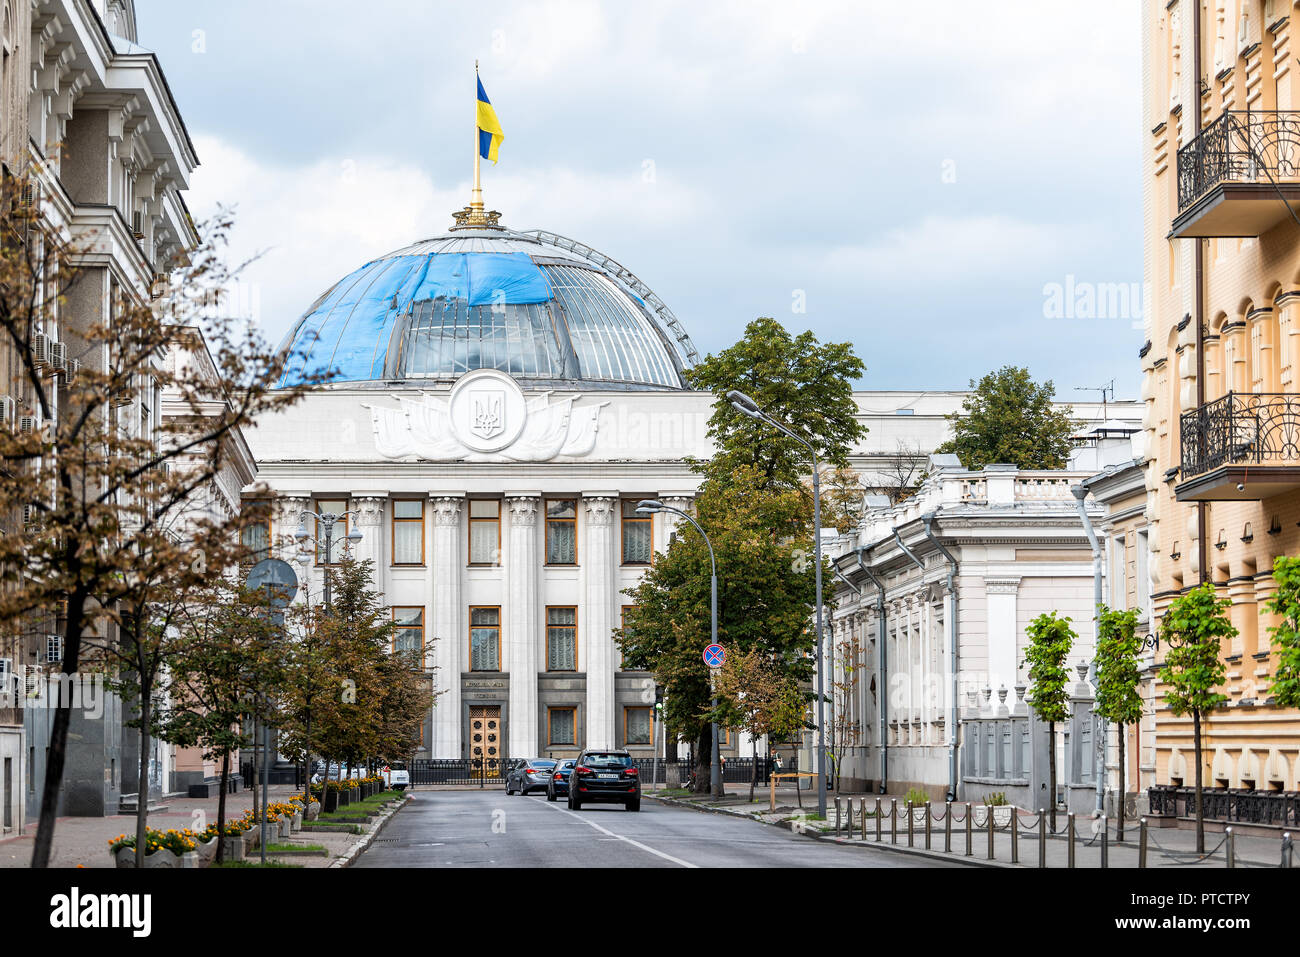 Kiew, Ukraine - 12. August 2018: Ukrainische Parlament Gebäude, Verhovna Rada mit Fahne, Straßenbild von Kiew, niemand Stockfoto